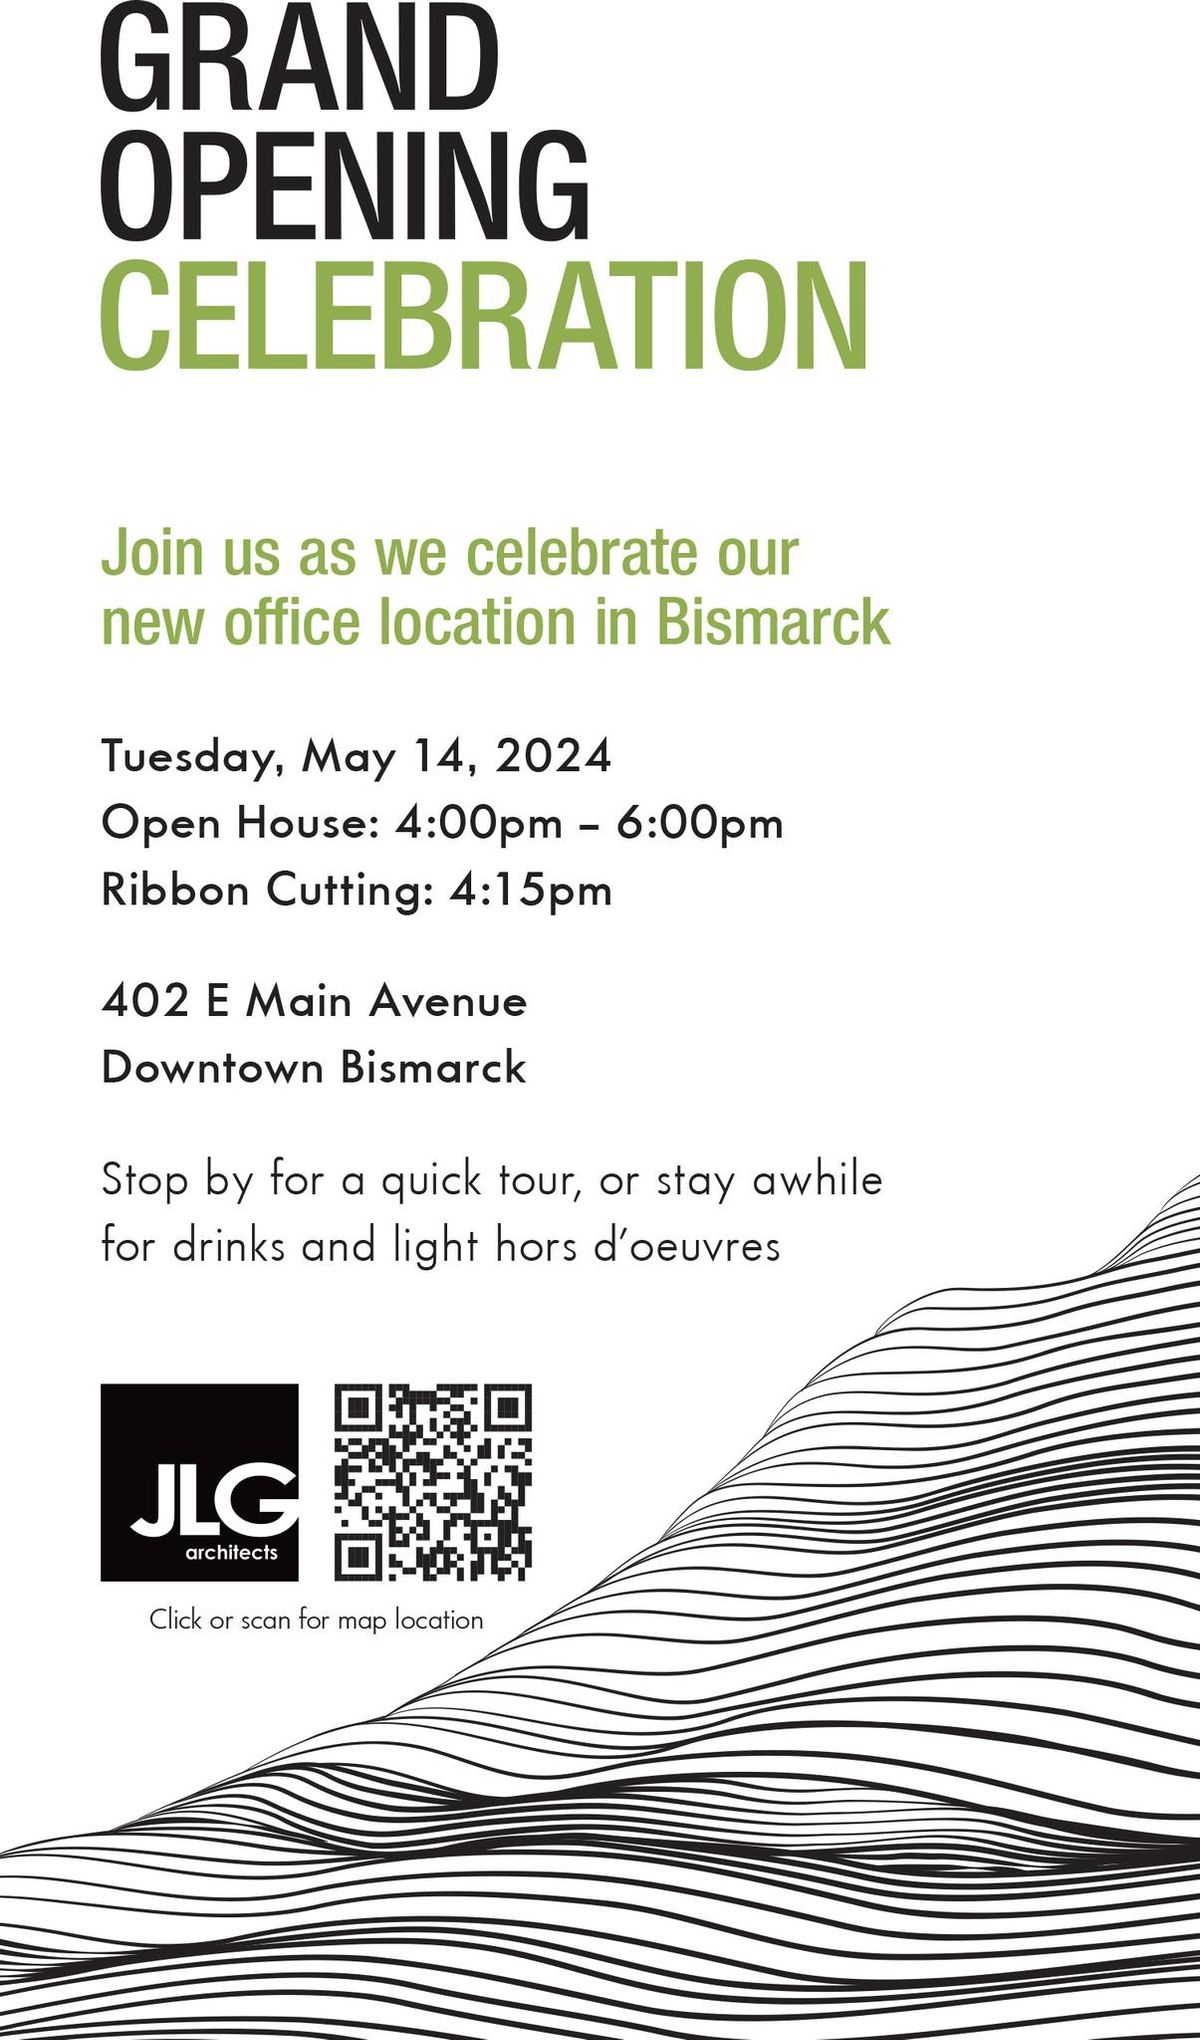 Grand Opening Celebration - New JLG Bismarck Office